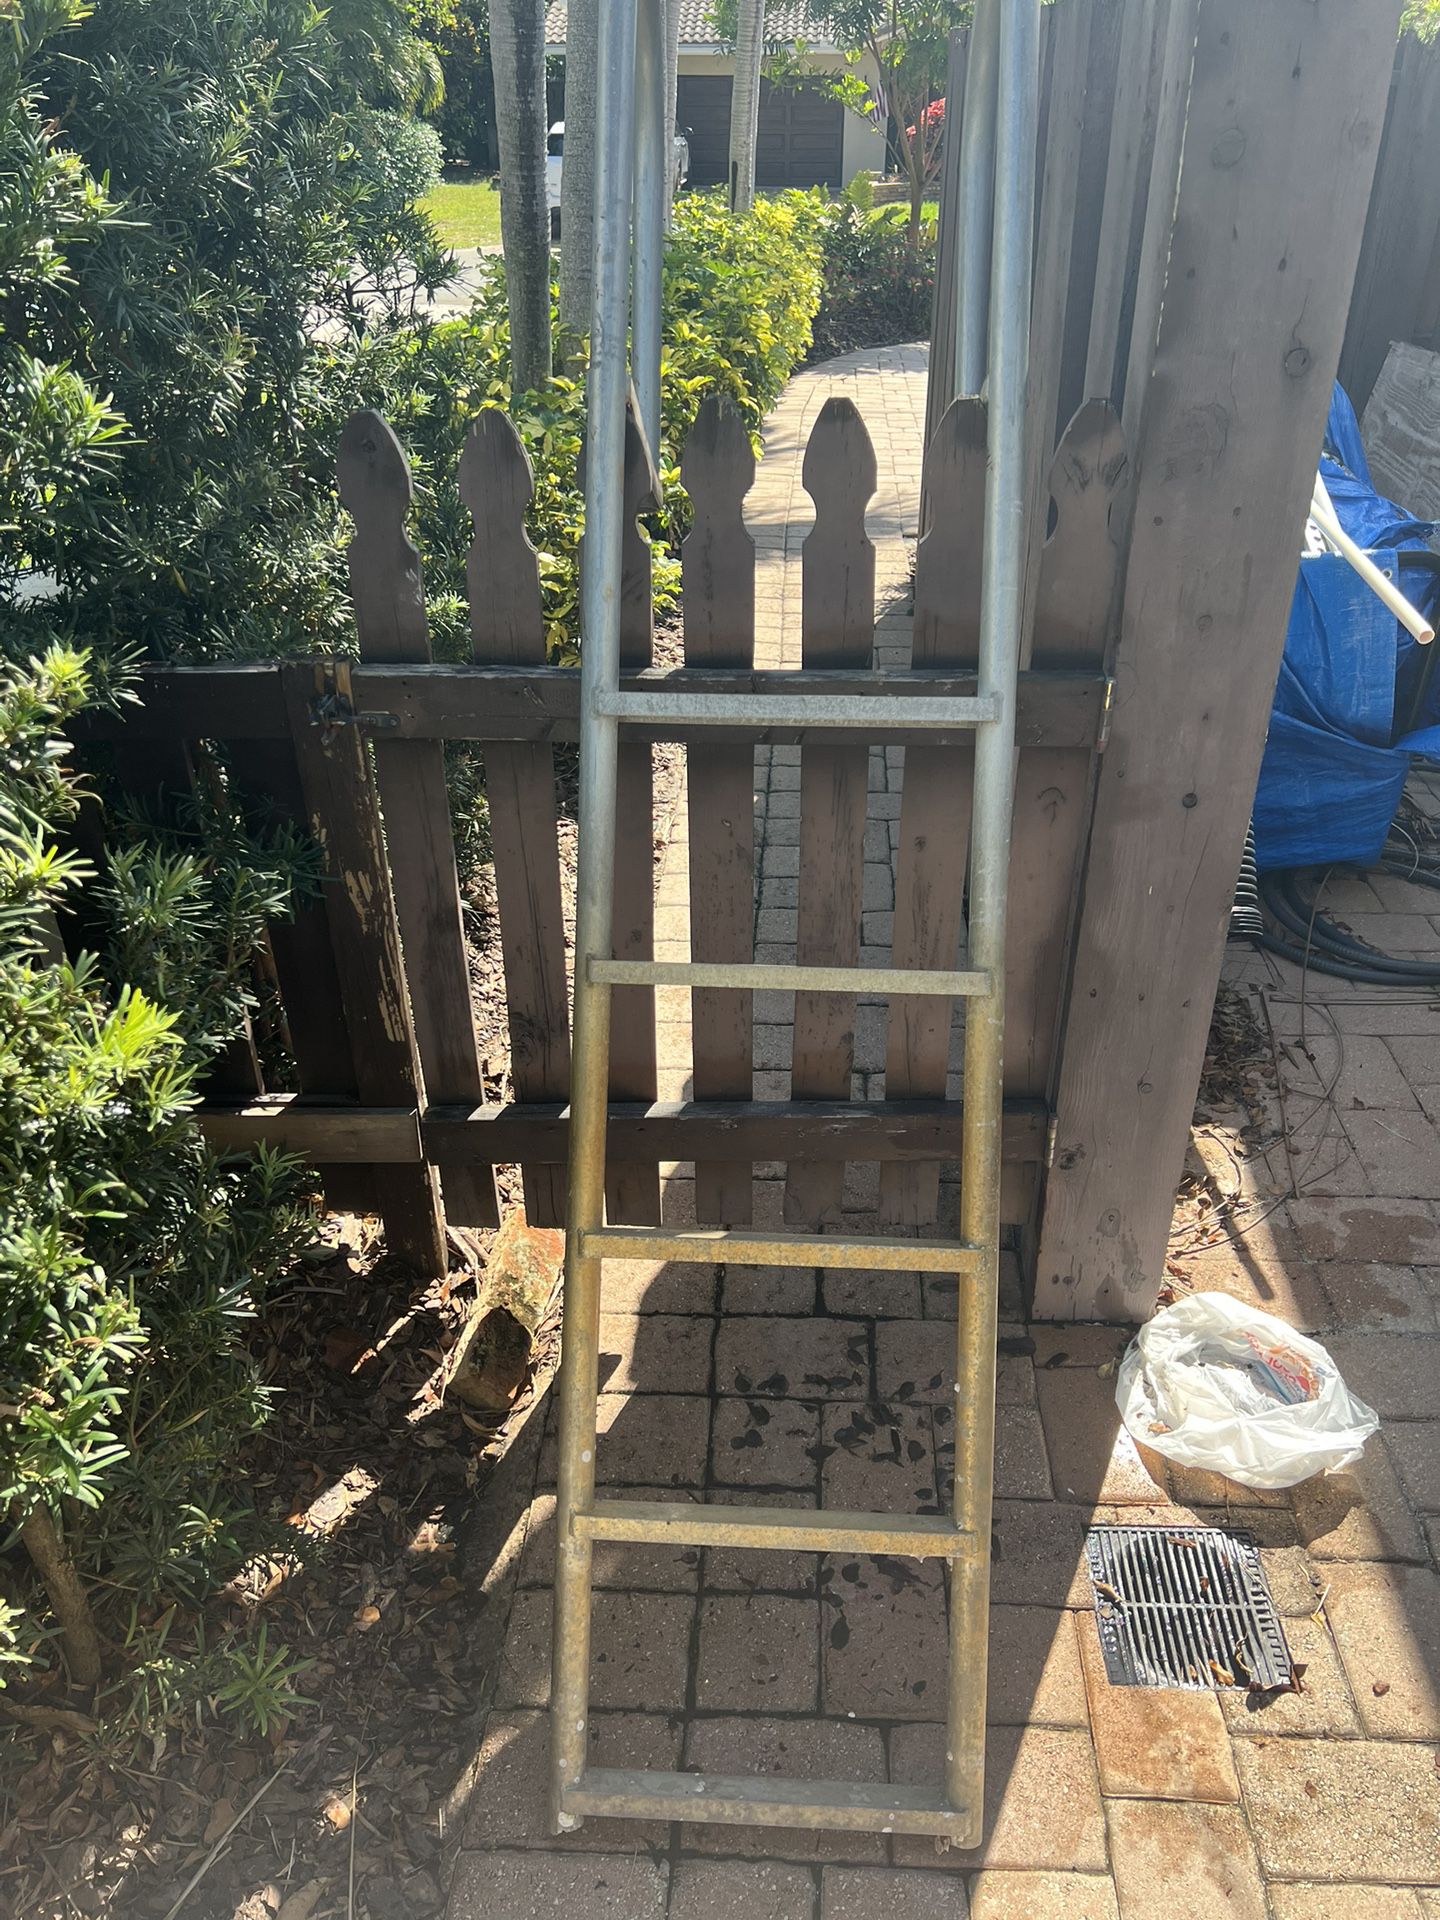 5 Foot Aluminum Dock Ladder $50 Each